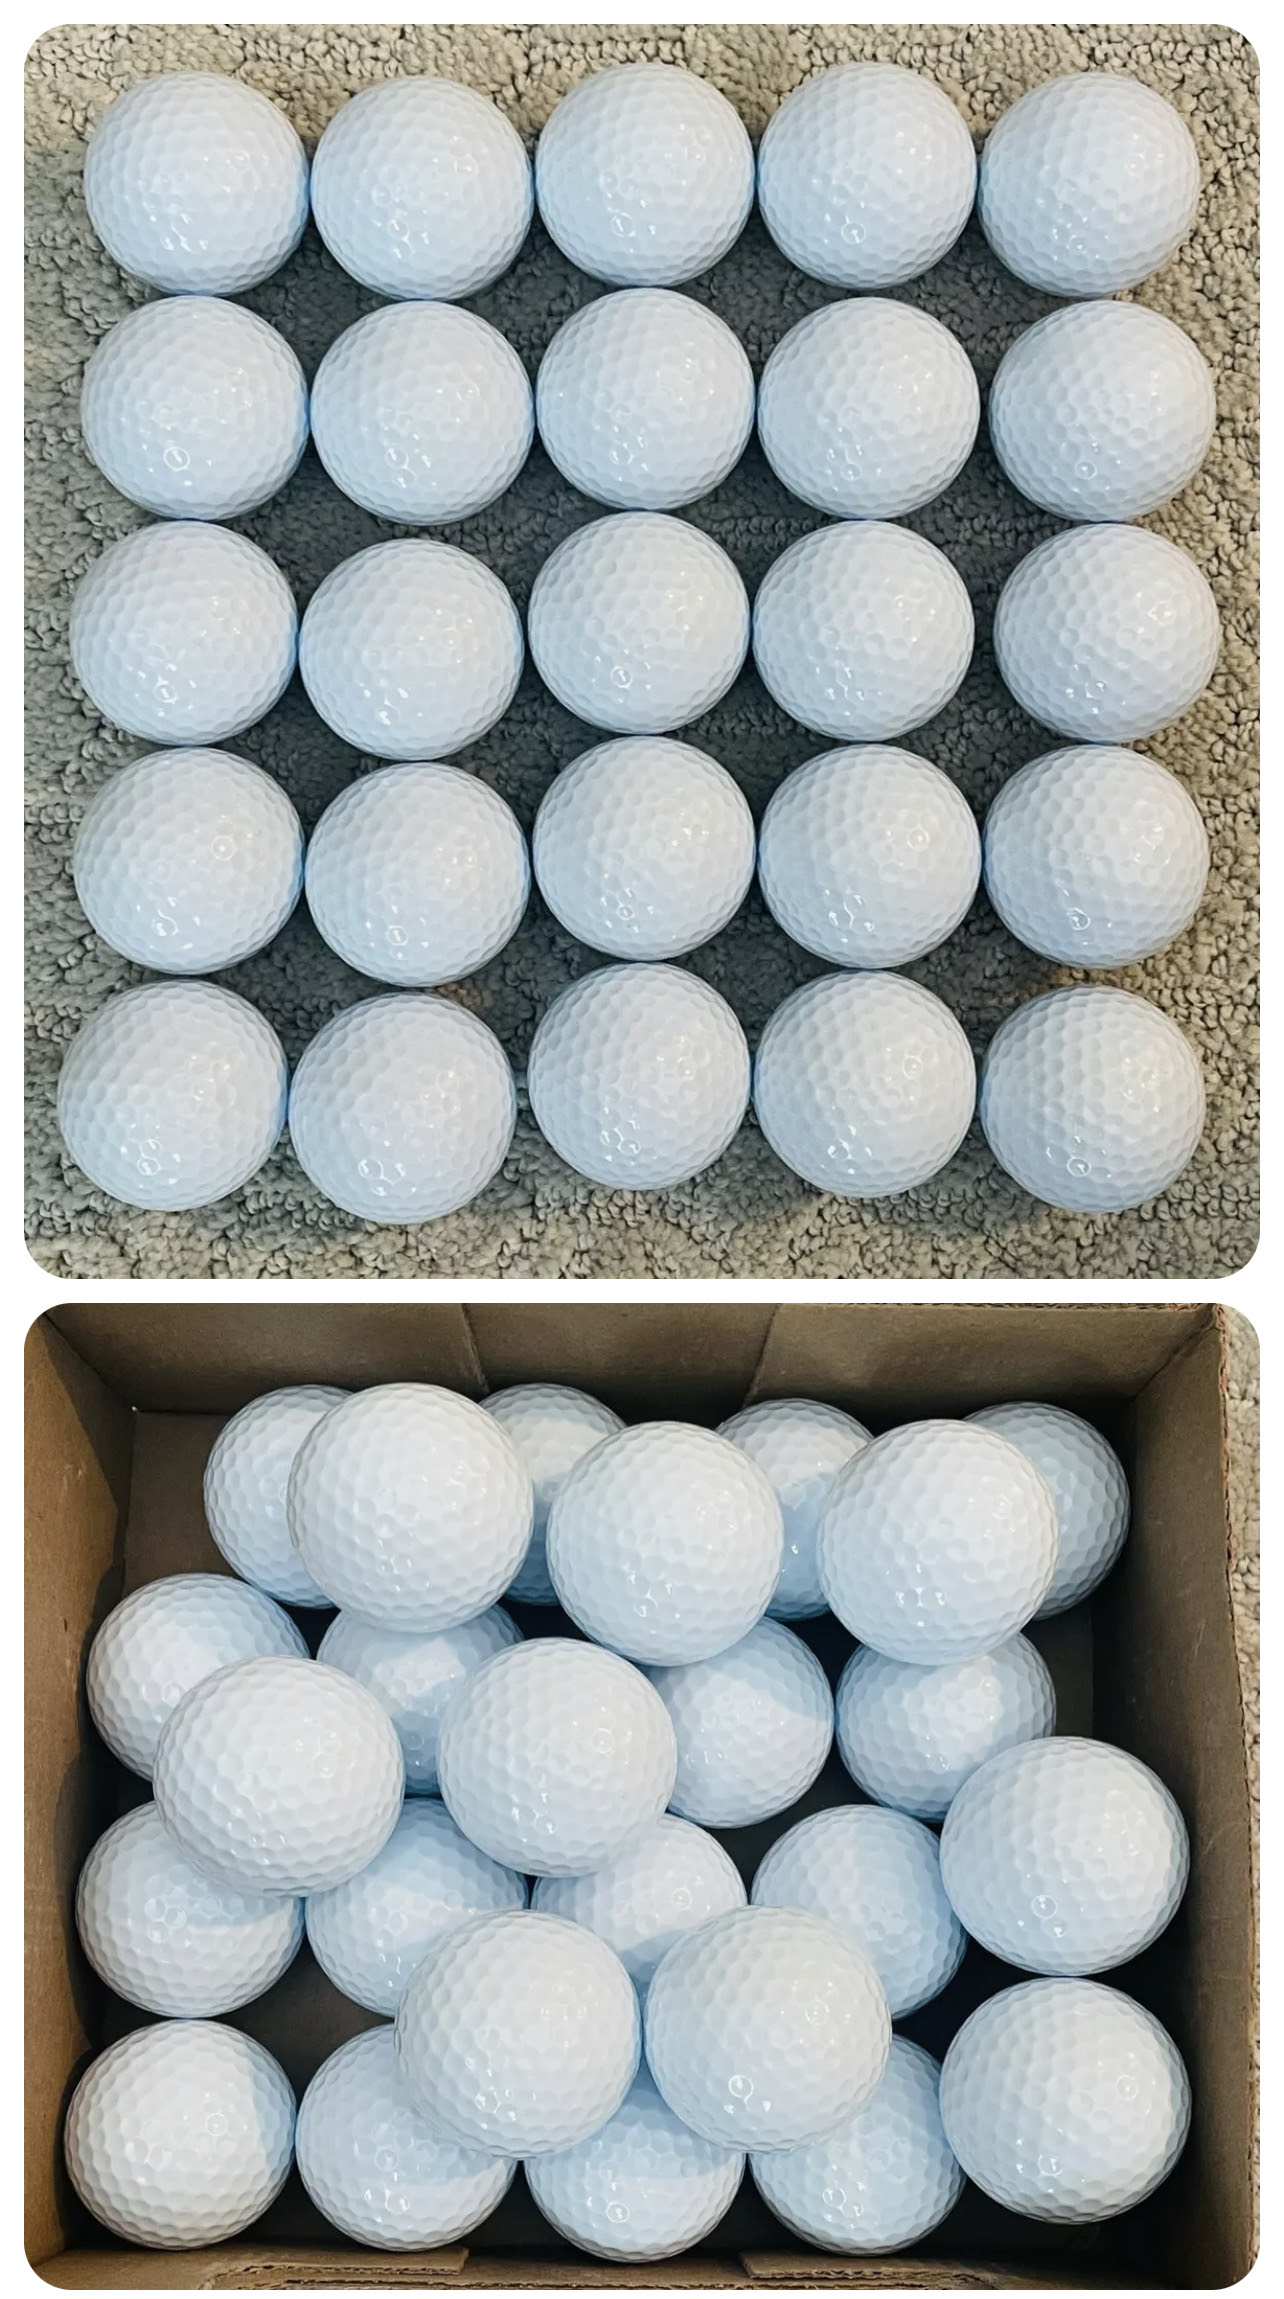 NEW Golf Balls - Unbranded White Balls 